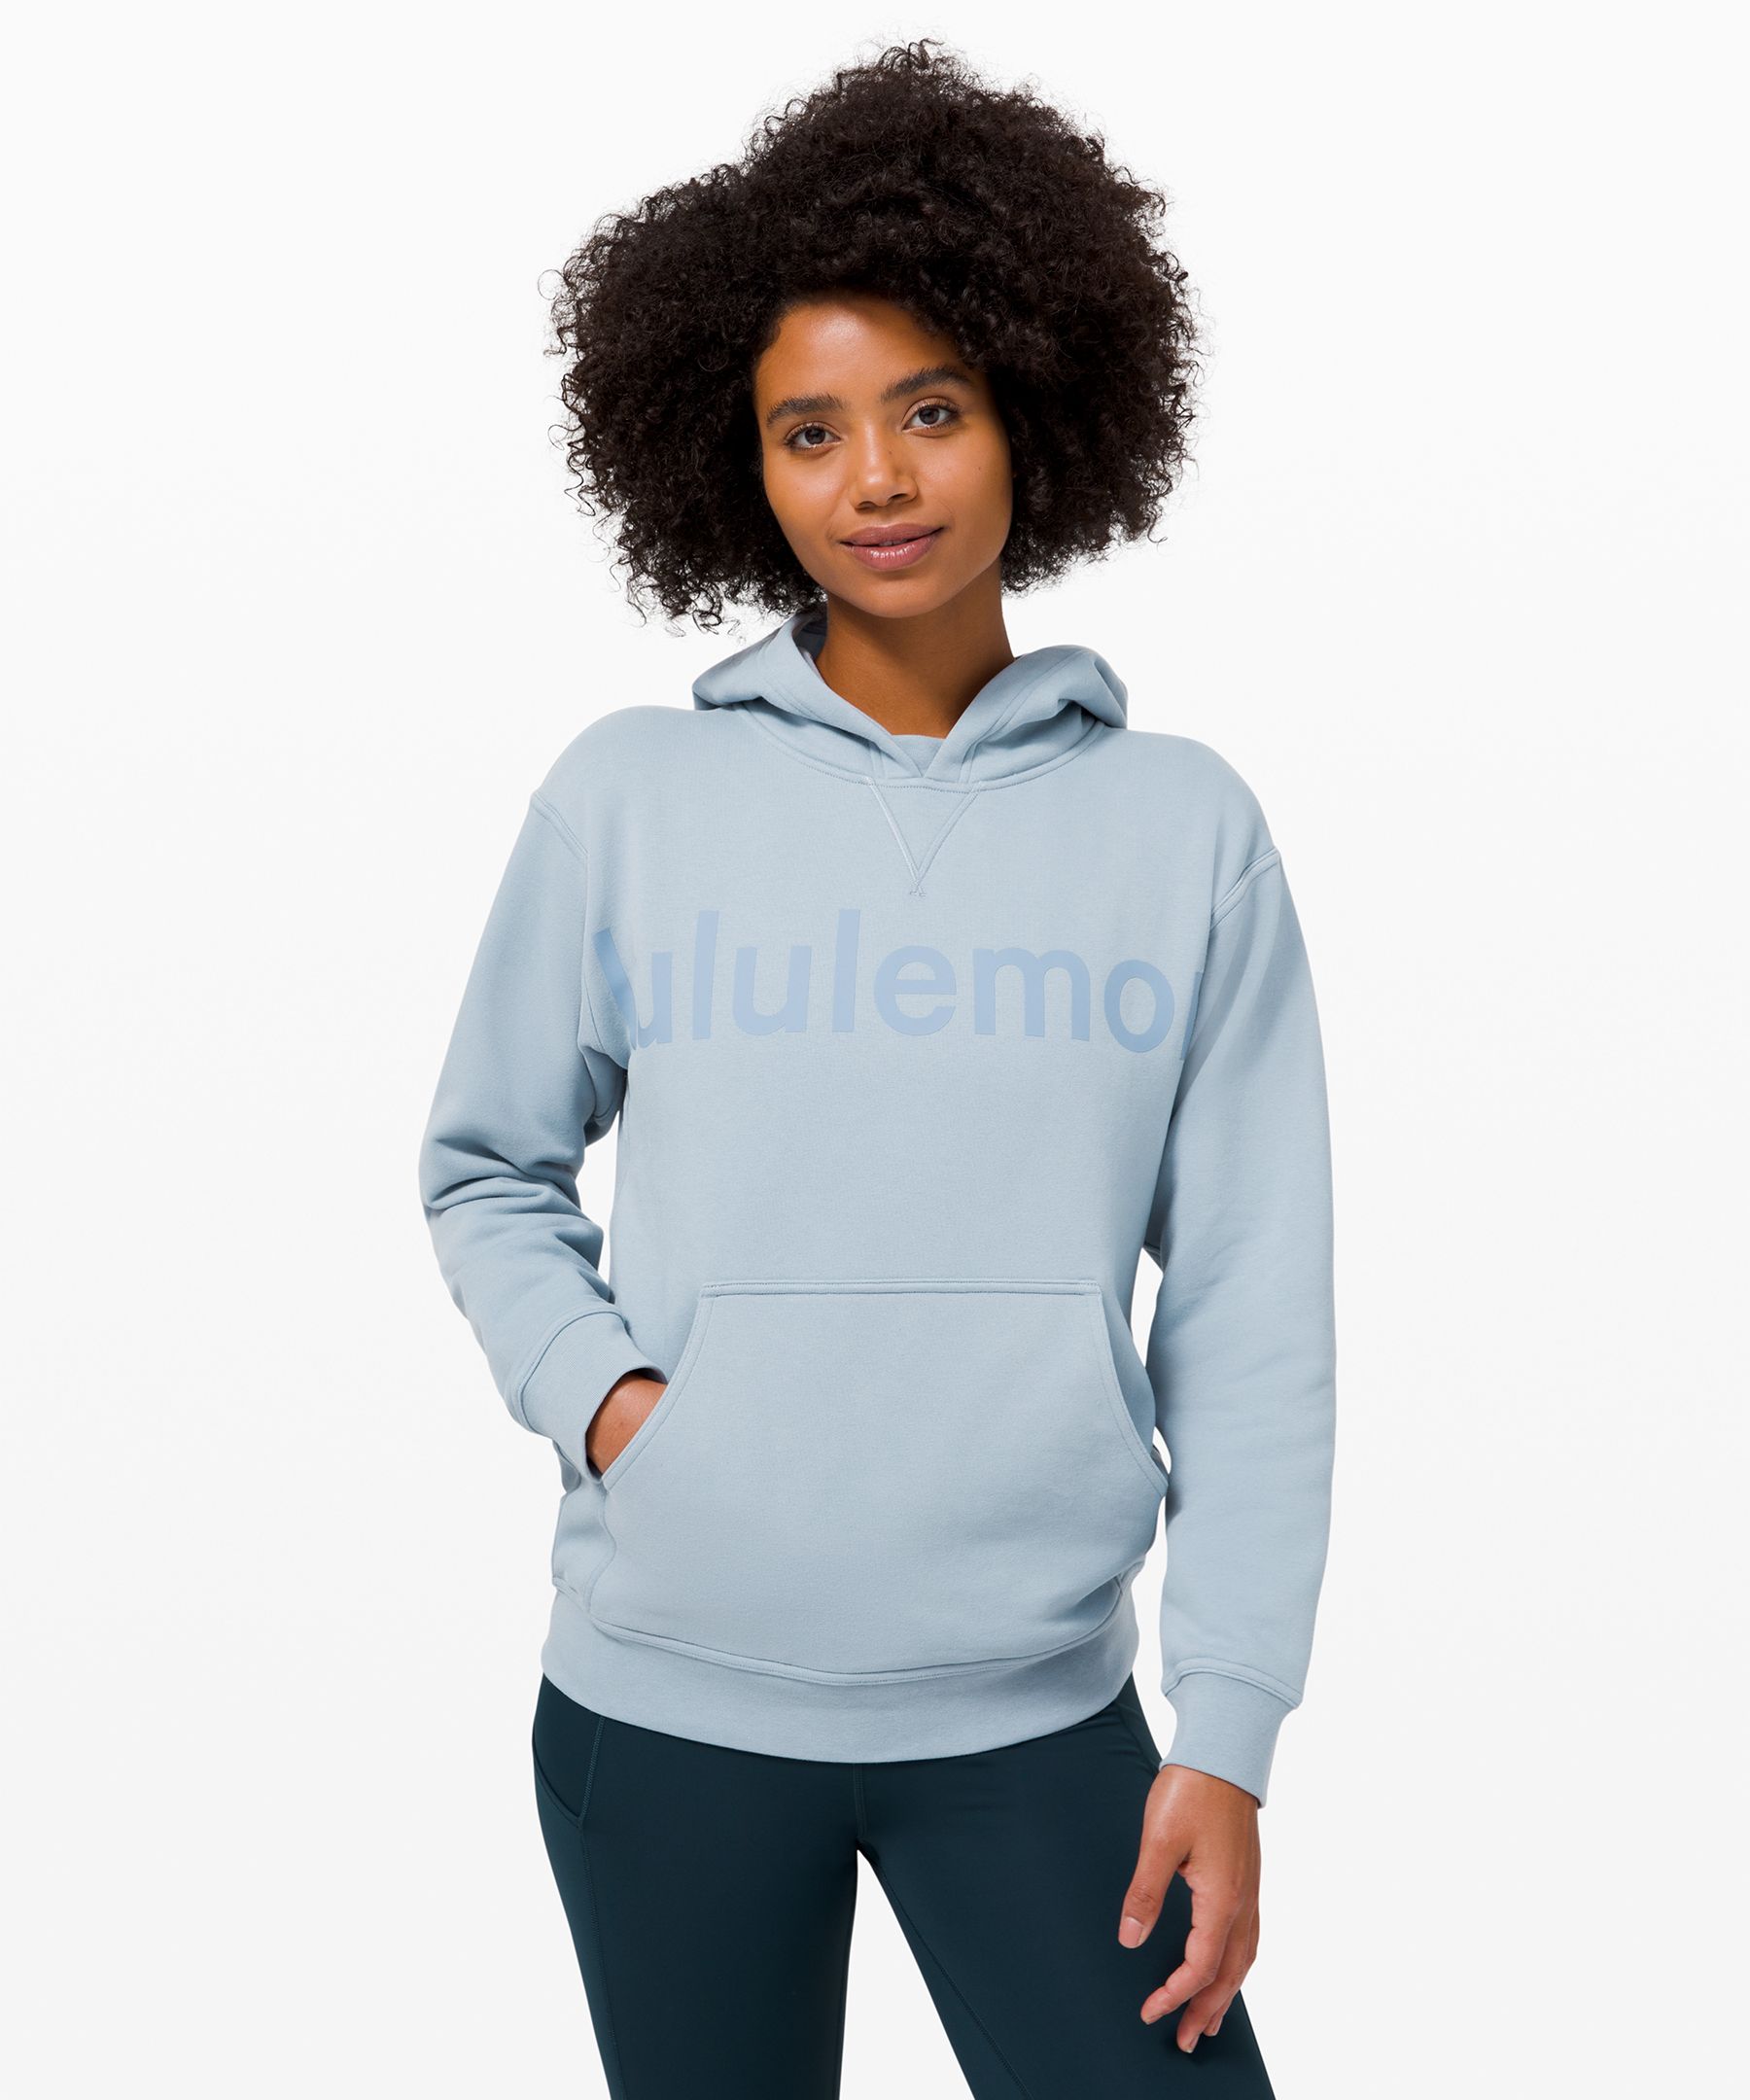 lululemon hoodies